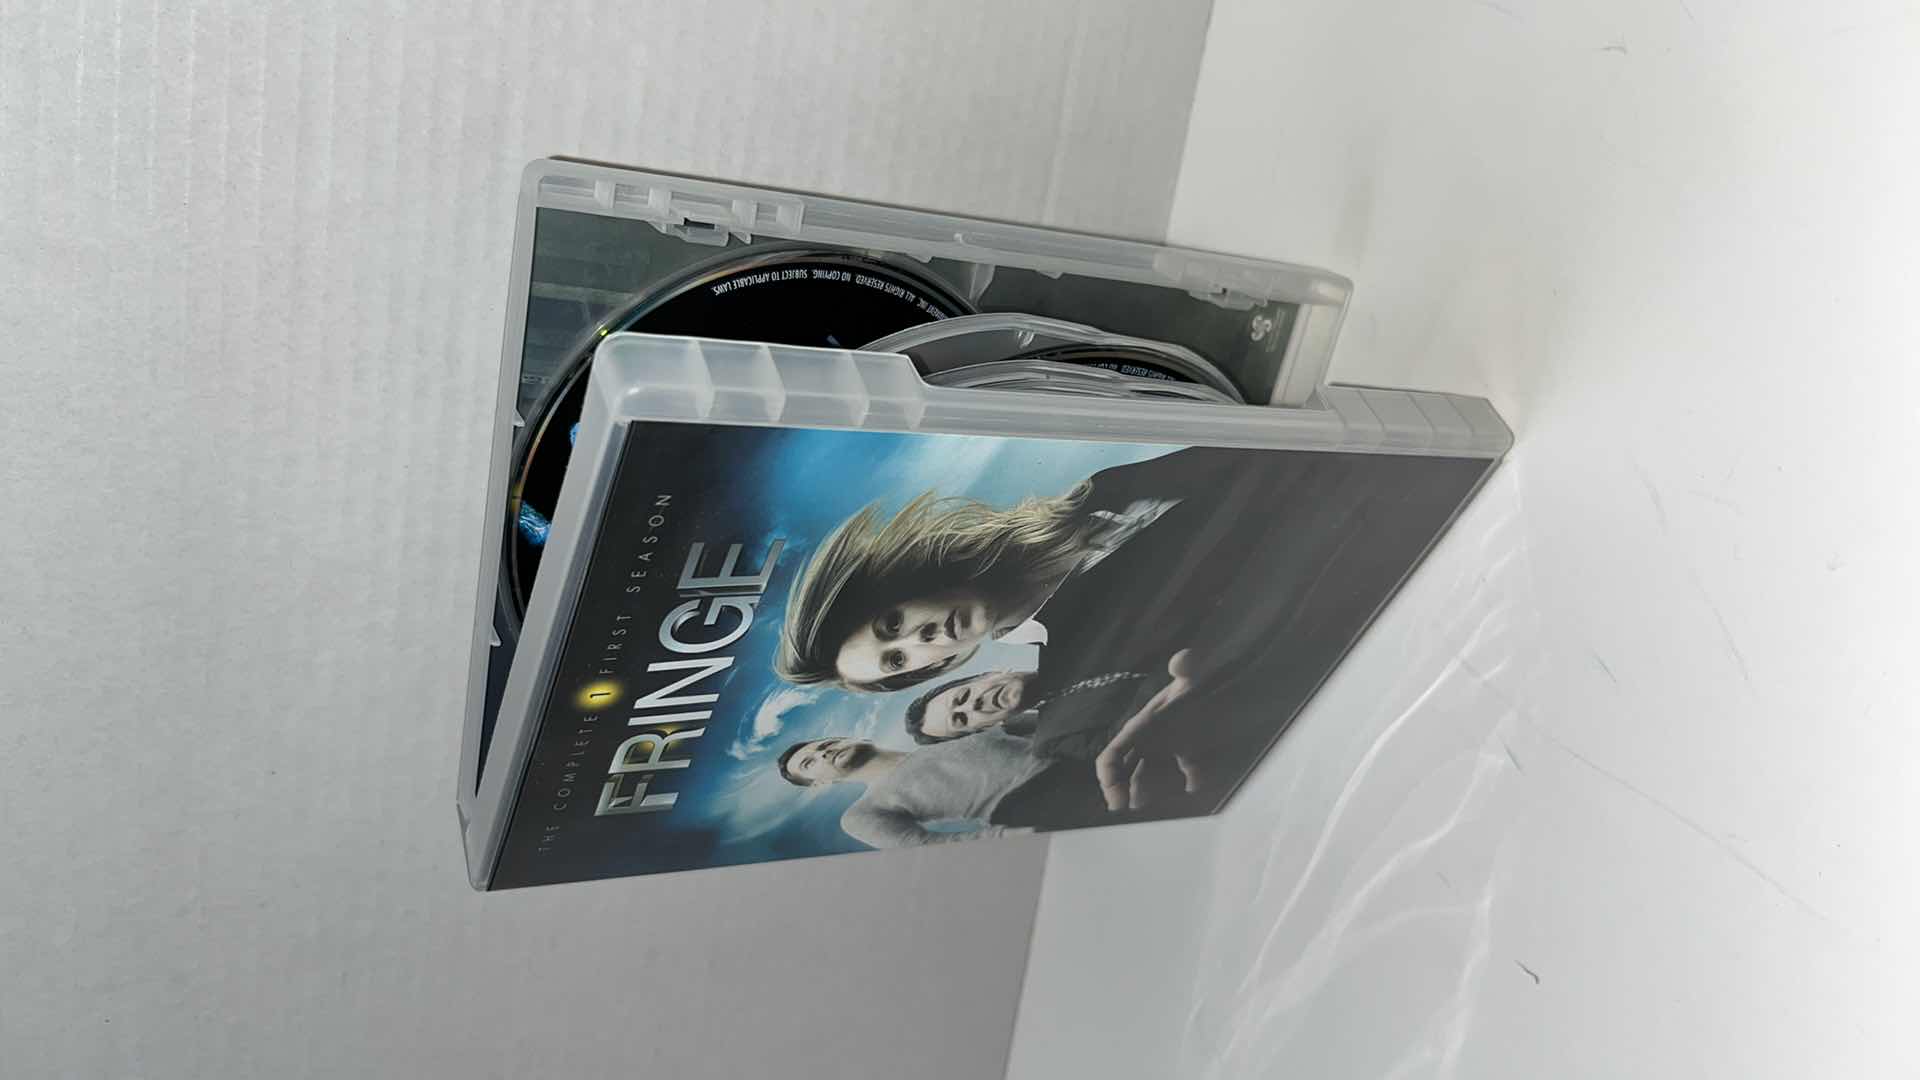 Photo 3 of FRINGE SEASONS 1, 2, 4, & 5 DVD BOX SETS (4)